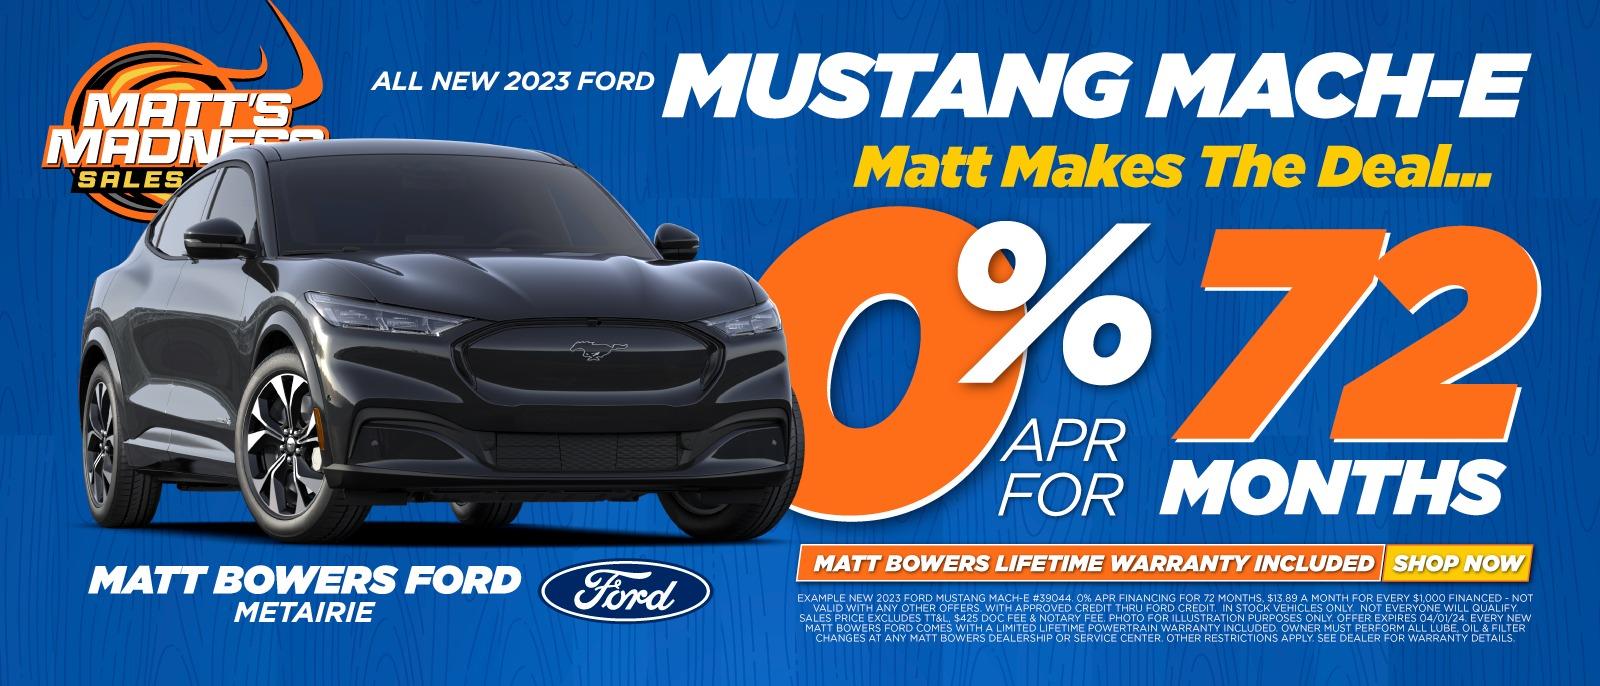 Matt Bowers Ford Mustang MachE Deals